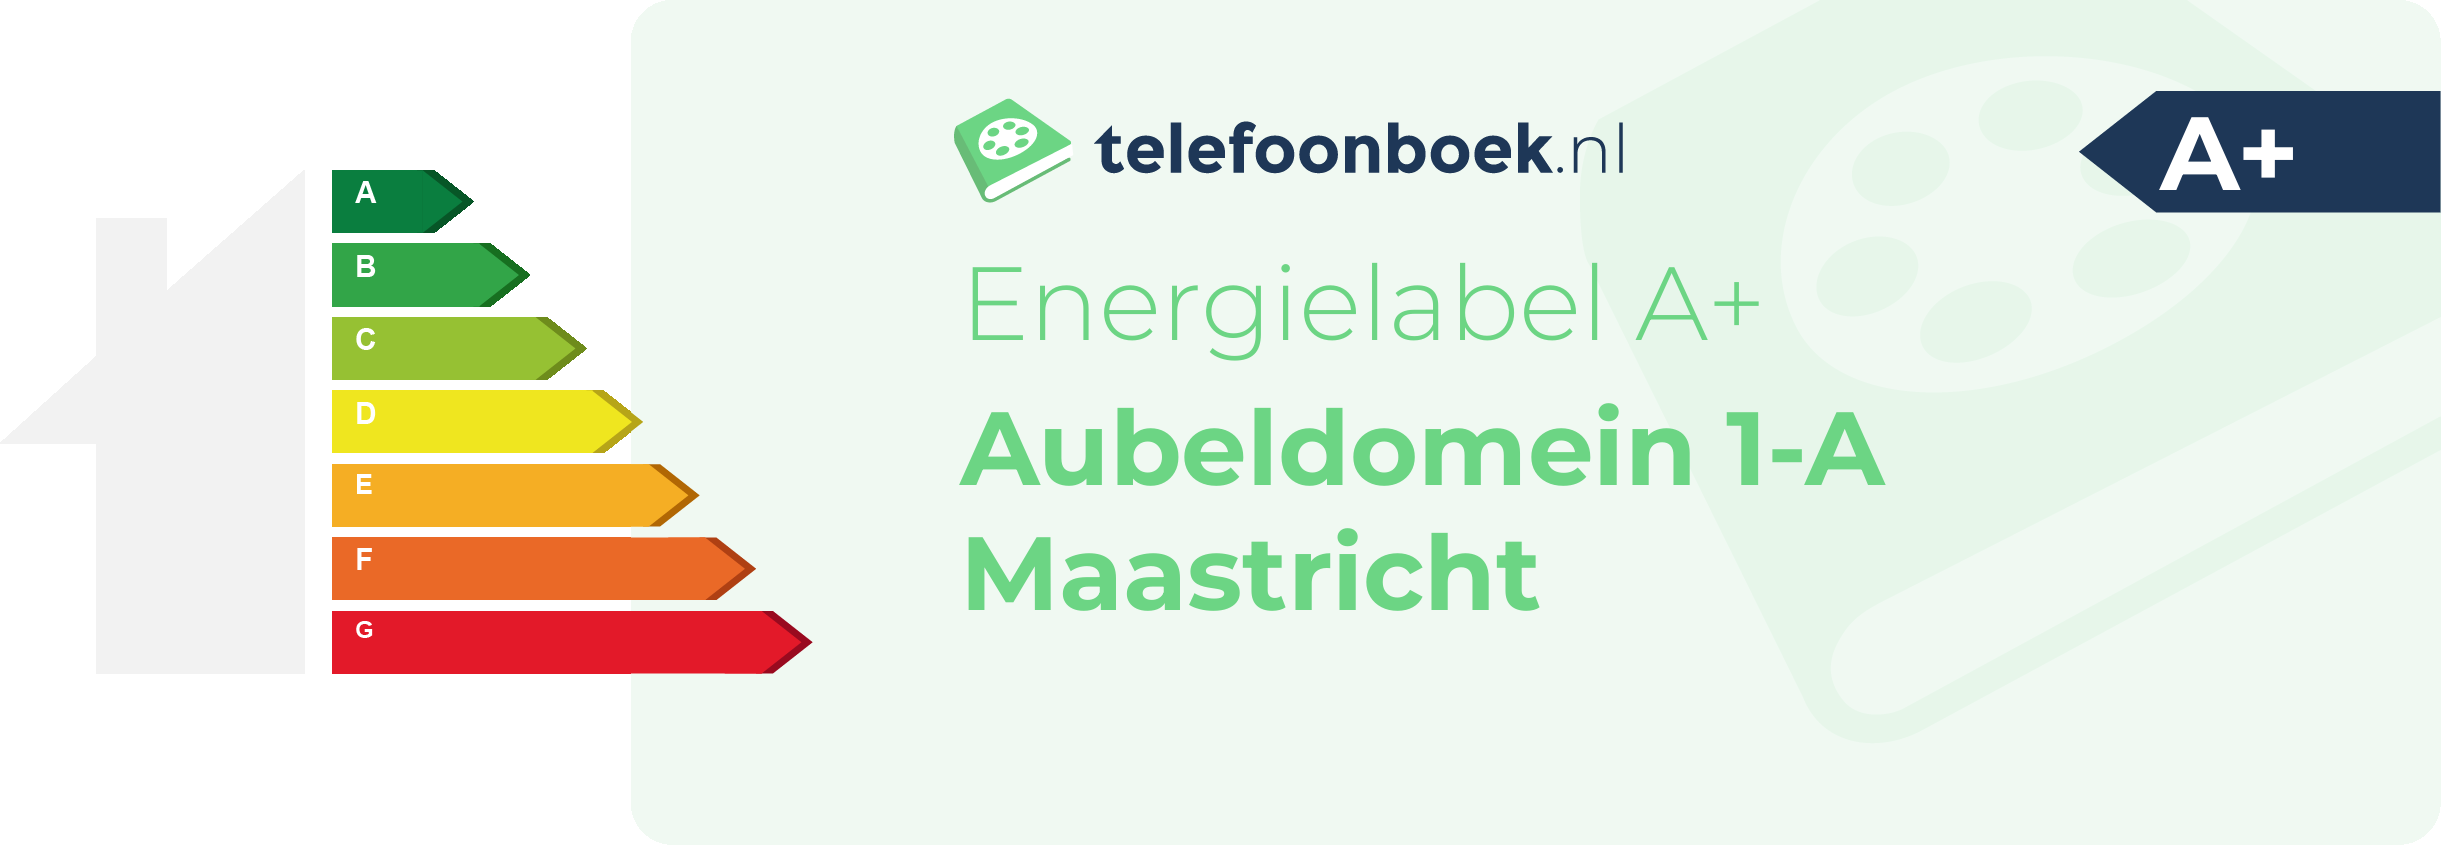 Energielabel Aubeldomein 1-A Maastricht